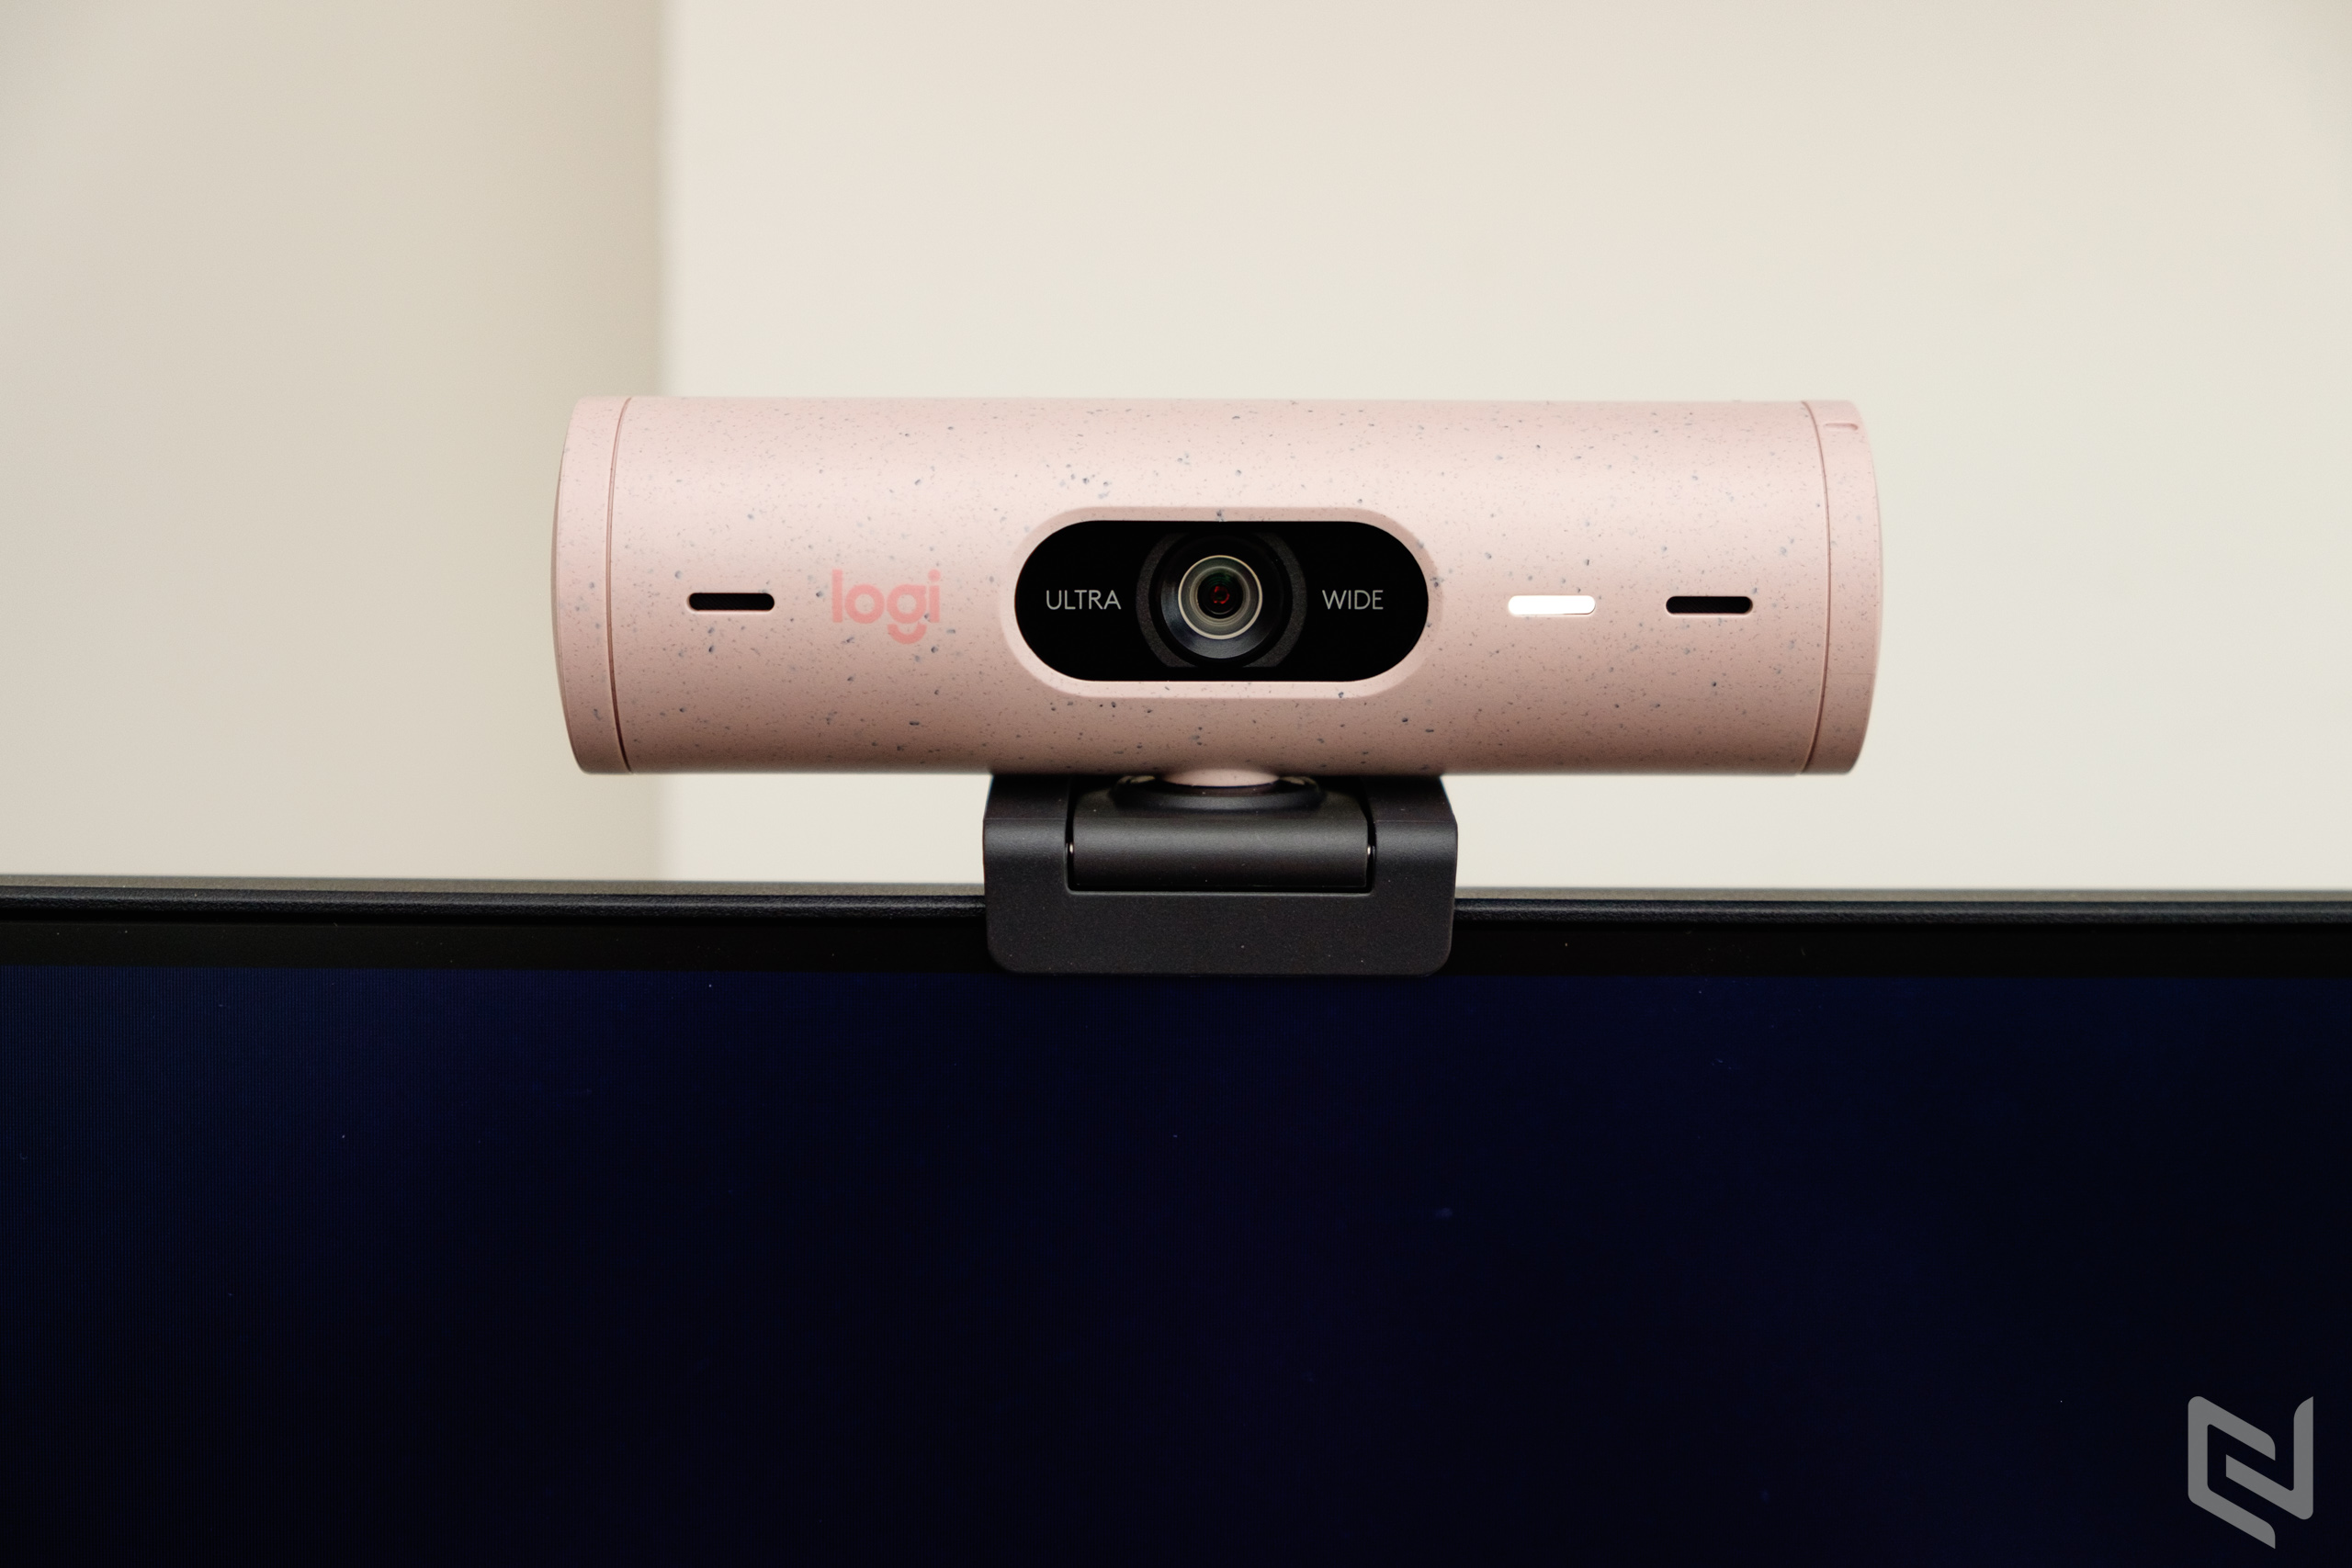 Đánh giá bộ phụ kiện không thể thiếu cho Người dùng làm việc và giải trí tại nhà: Webcam Logitech Brio 500, tai nghe Zone Vibe 100, bàn phím và chuột không dây Logitech